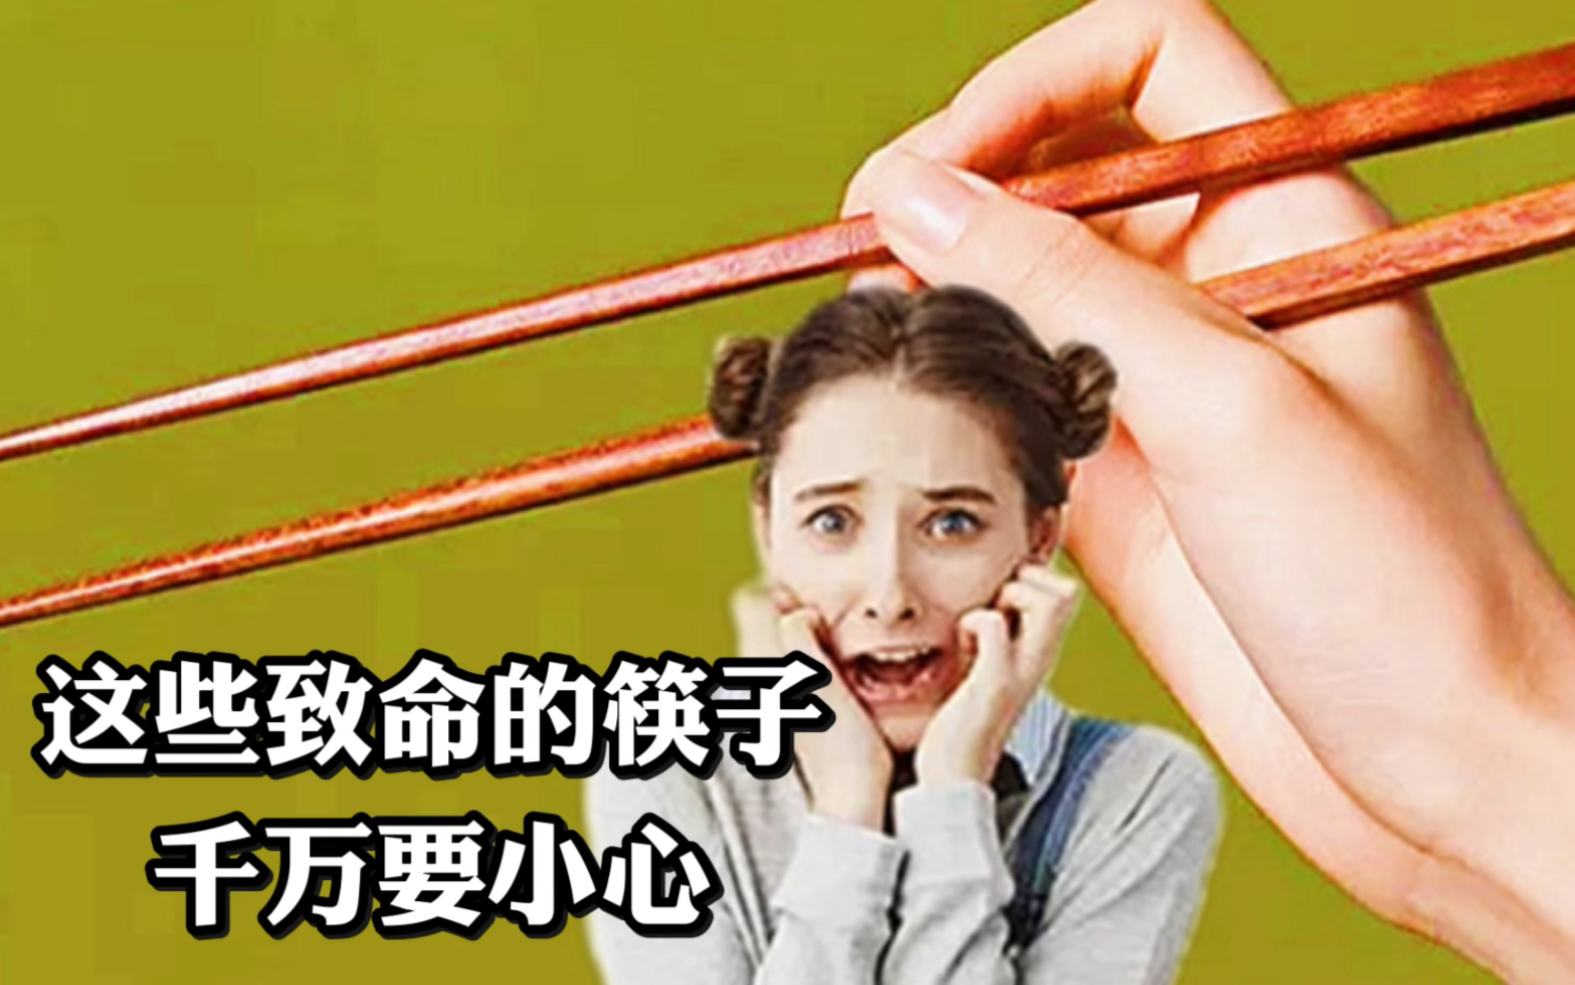 这些致命的筷子，千万要小心。